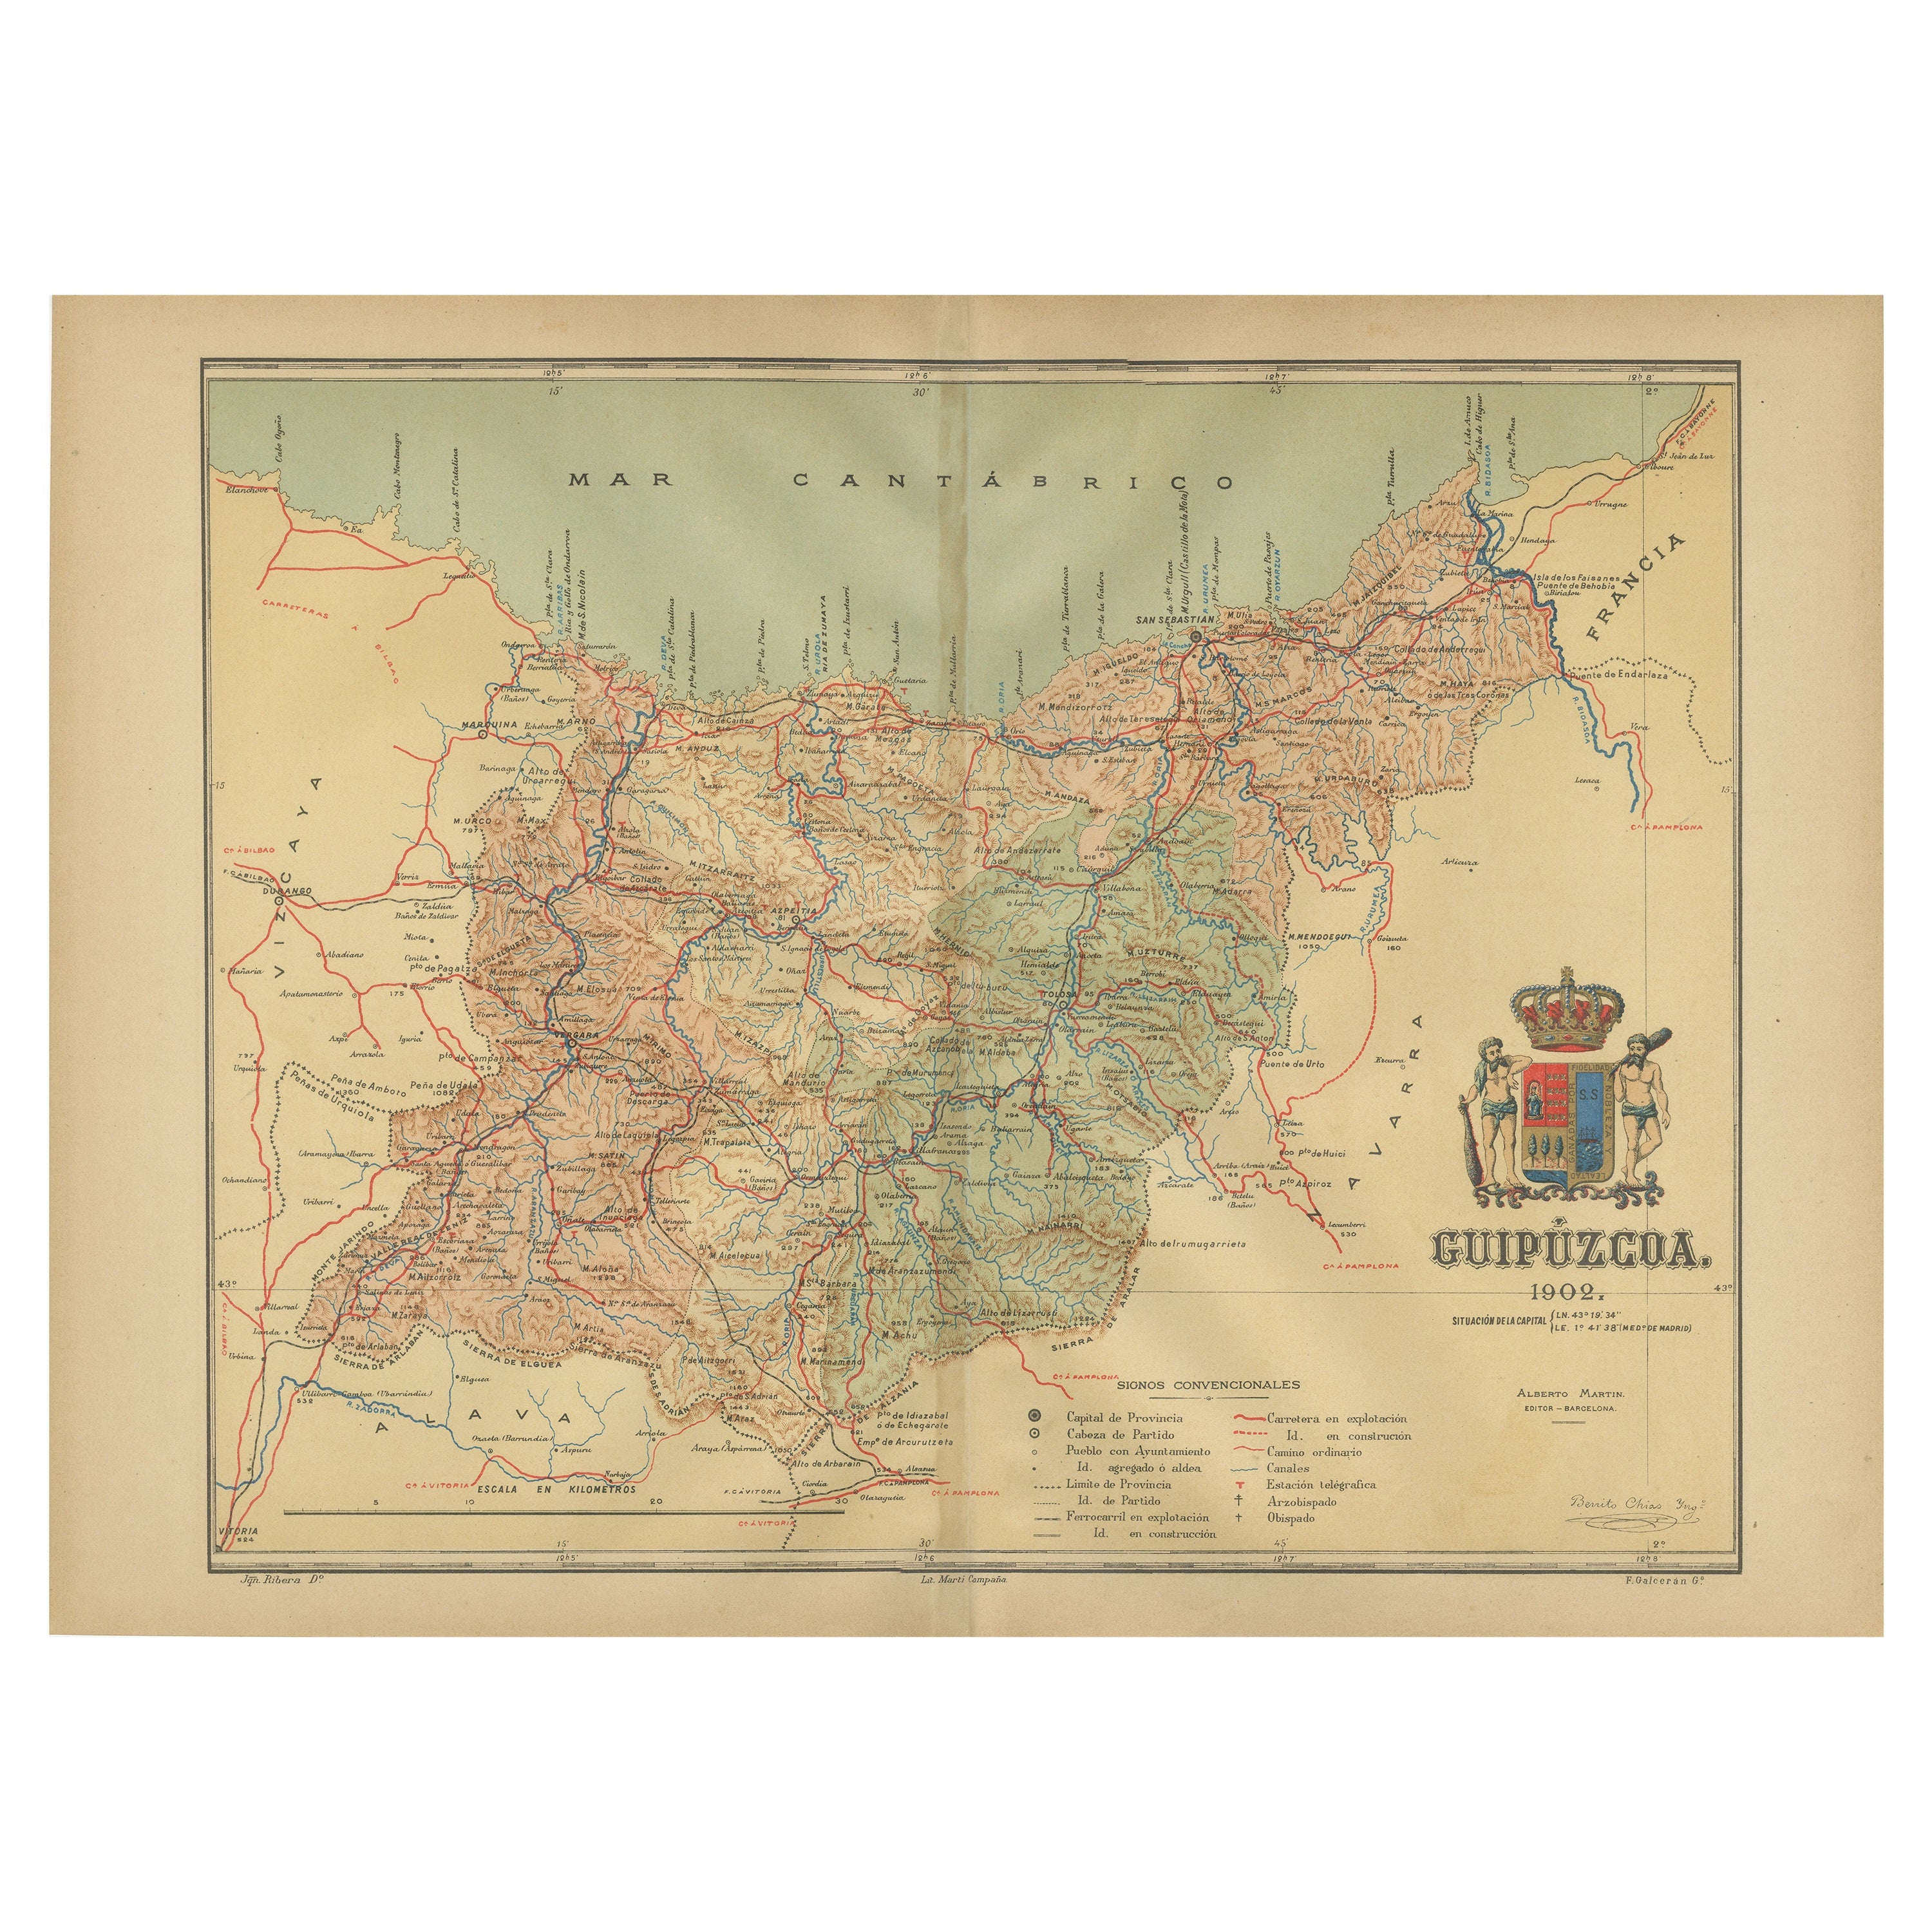 Gipuzkoa 1902: Eine kartografische Momentaufnahme der baskischen Küste und des Hochlands